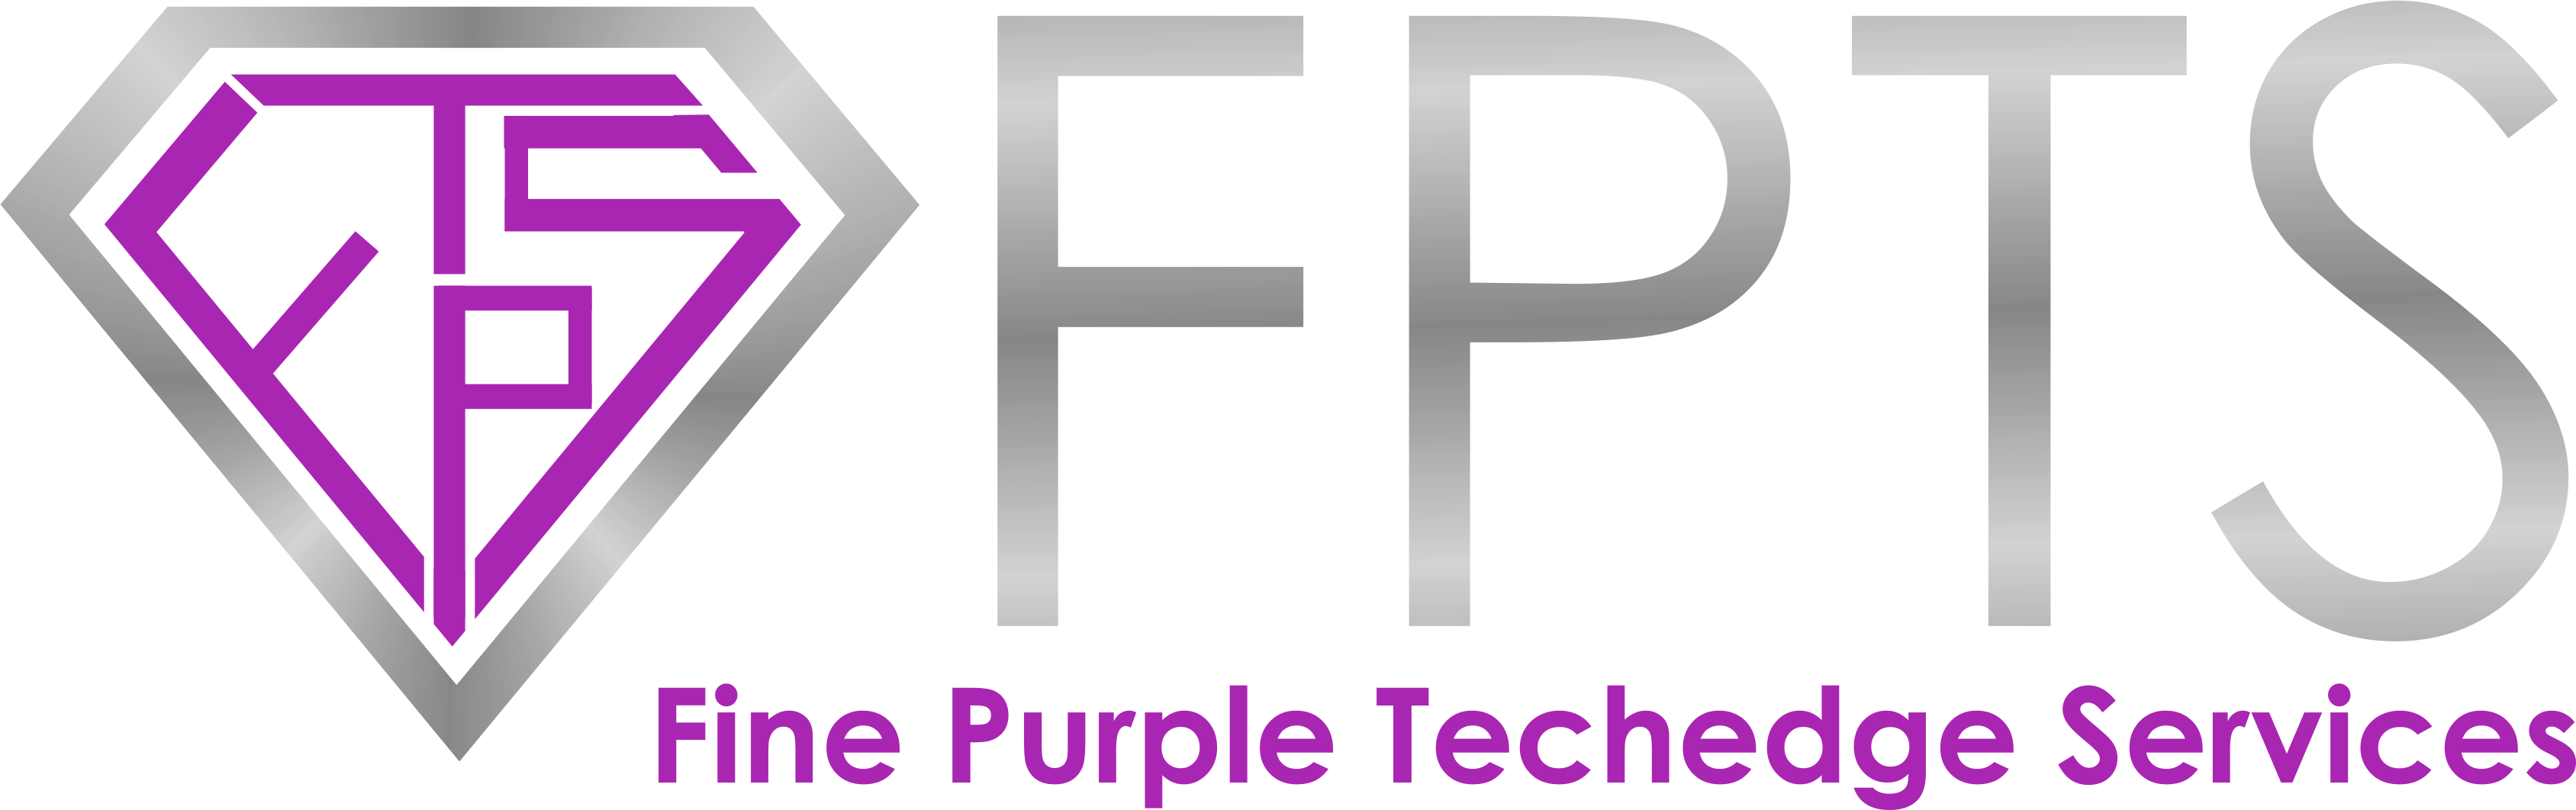 Fine Purple Tech Edge